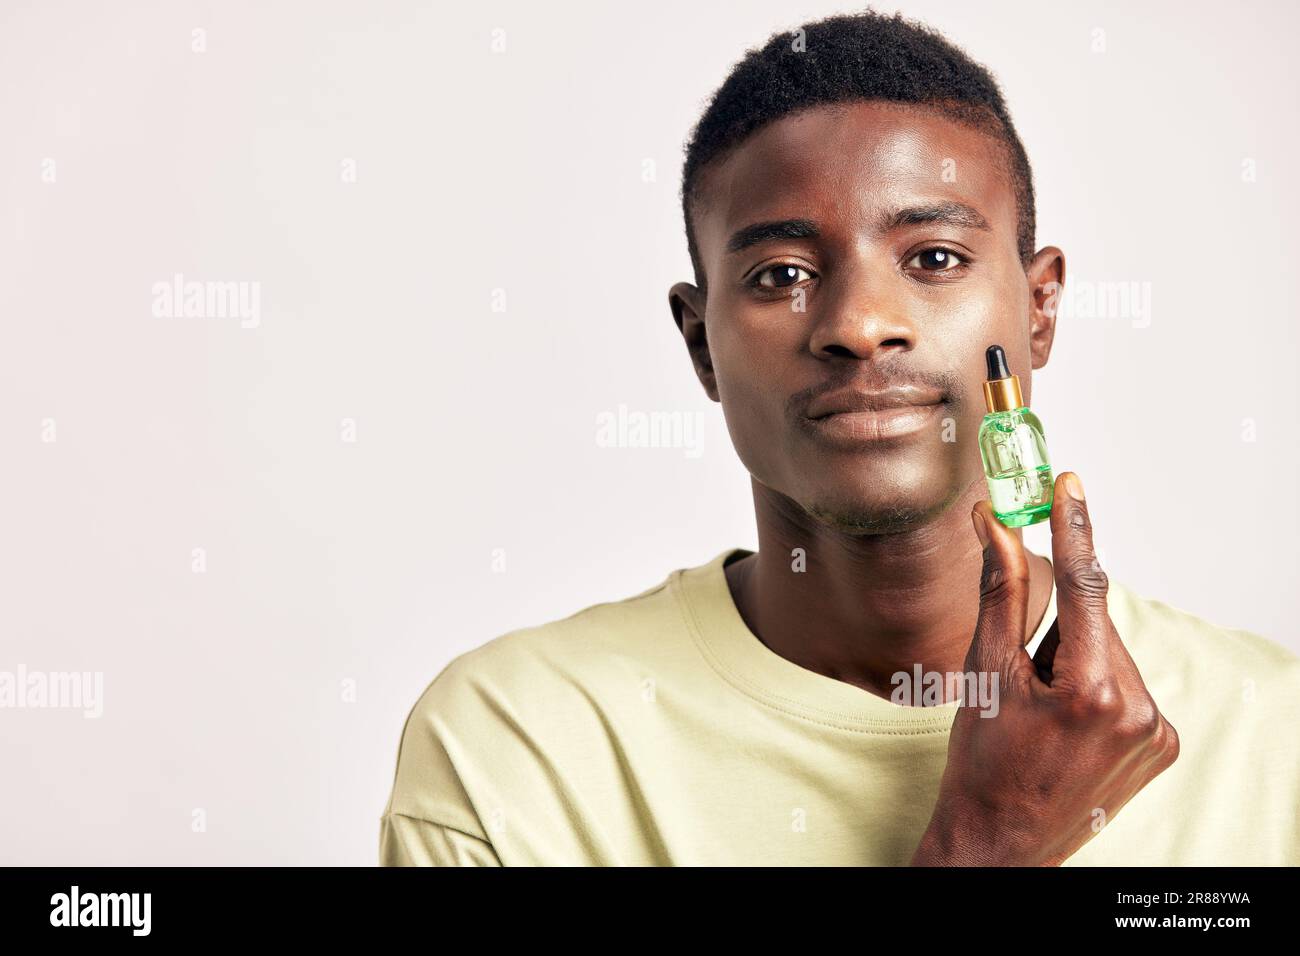 Un homme africain dans un t-shirt avec une petite bouteille verte de lotion pour la peau. Homme noir en studio avec la beauté, la santé et la procédure naturelle de peau. Bien-être, cosme Banque D'Images